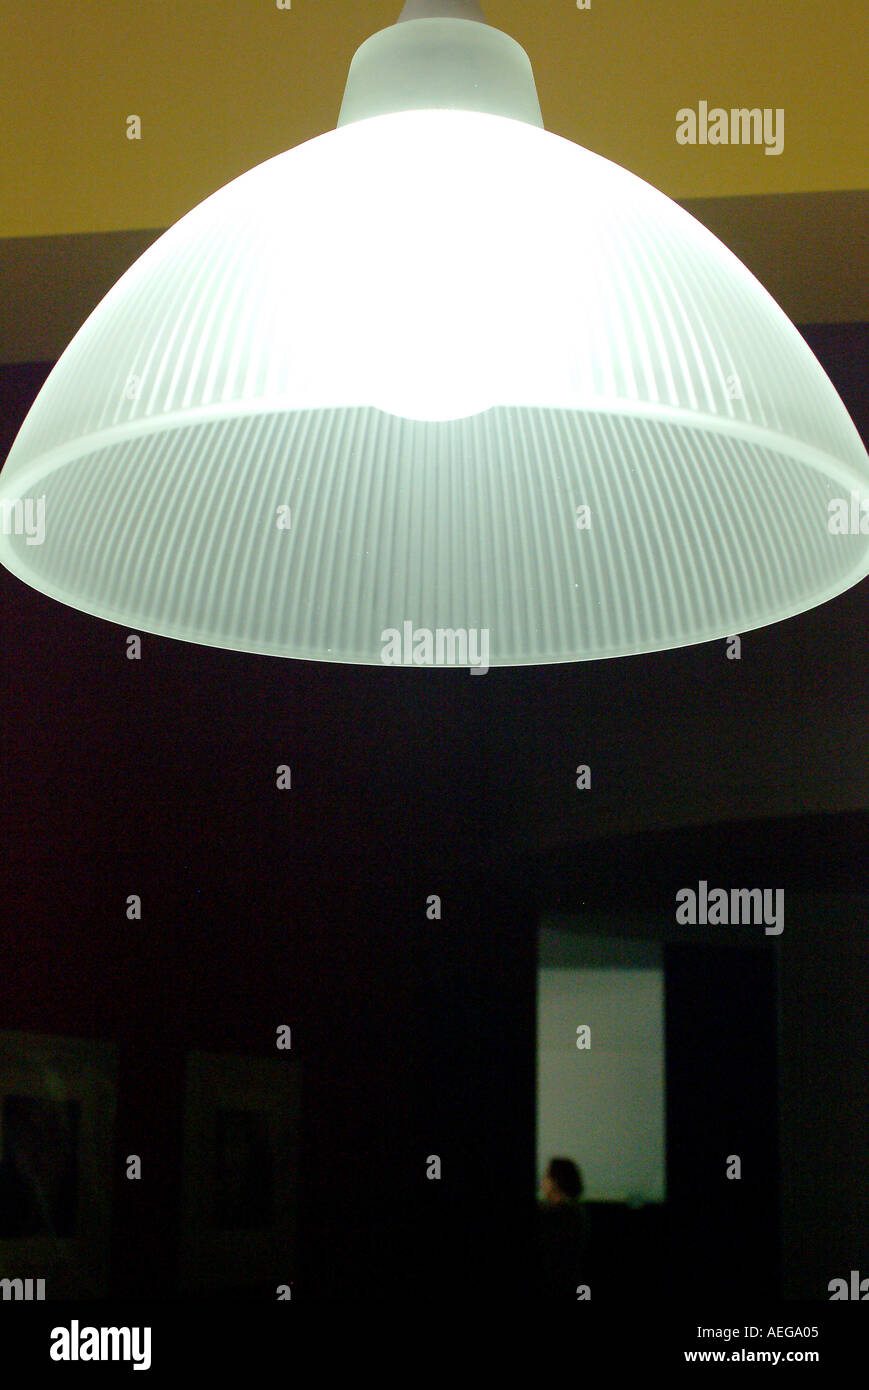 Sweet Home hängende Lampe Lampenschirm weiß Traslucid transparent Beleuchtung Lichtenergie elektrische Deko Dekoration ornament Stockfoto